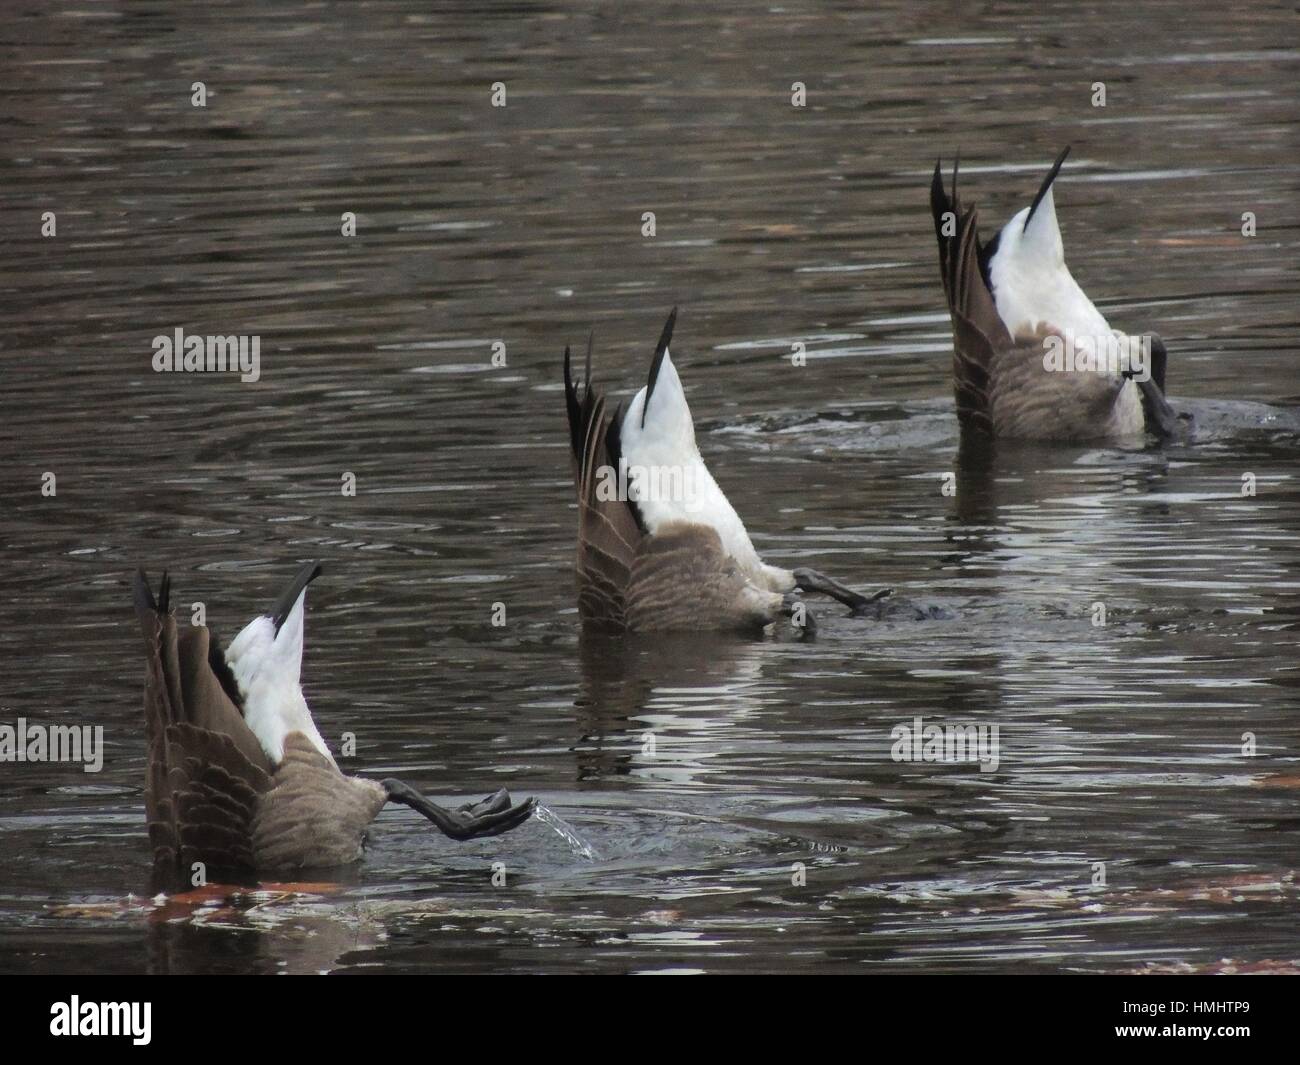 Tres gansos poner sus fondos en el aire para buscar comida debajo de la superficie de un arroyo, Pennsylvania, Estados Unidos. Foto de stock